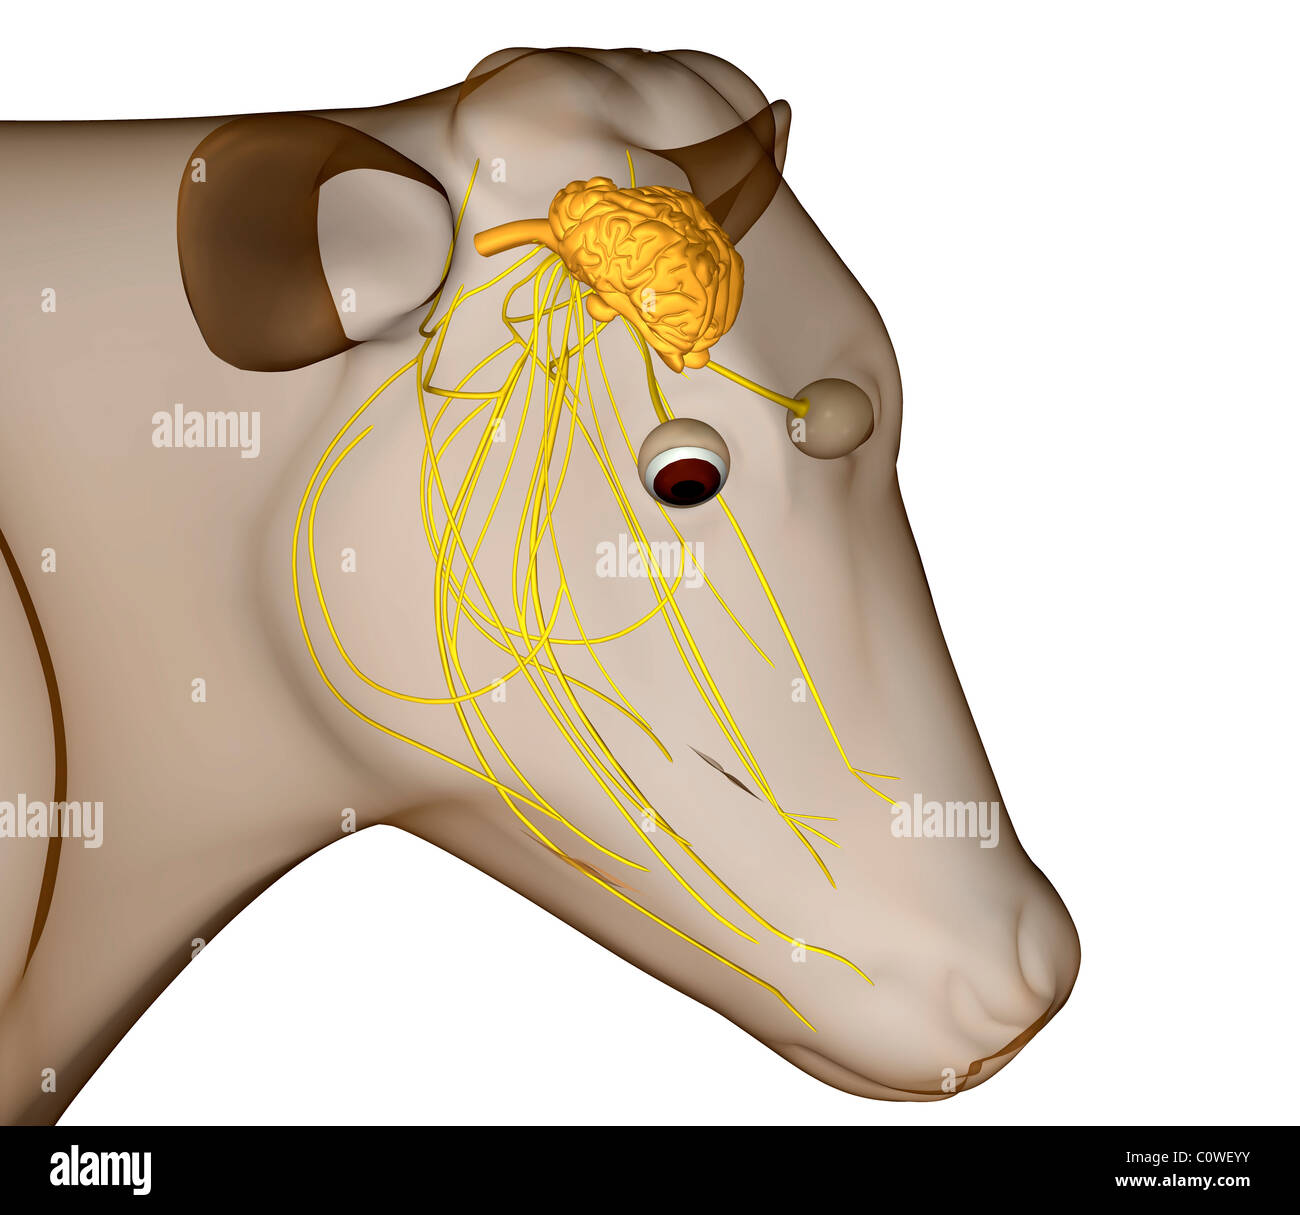 Anatomie du cerveau de vache Banque D'Images